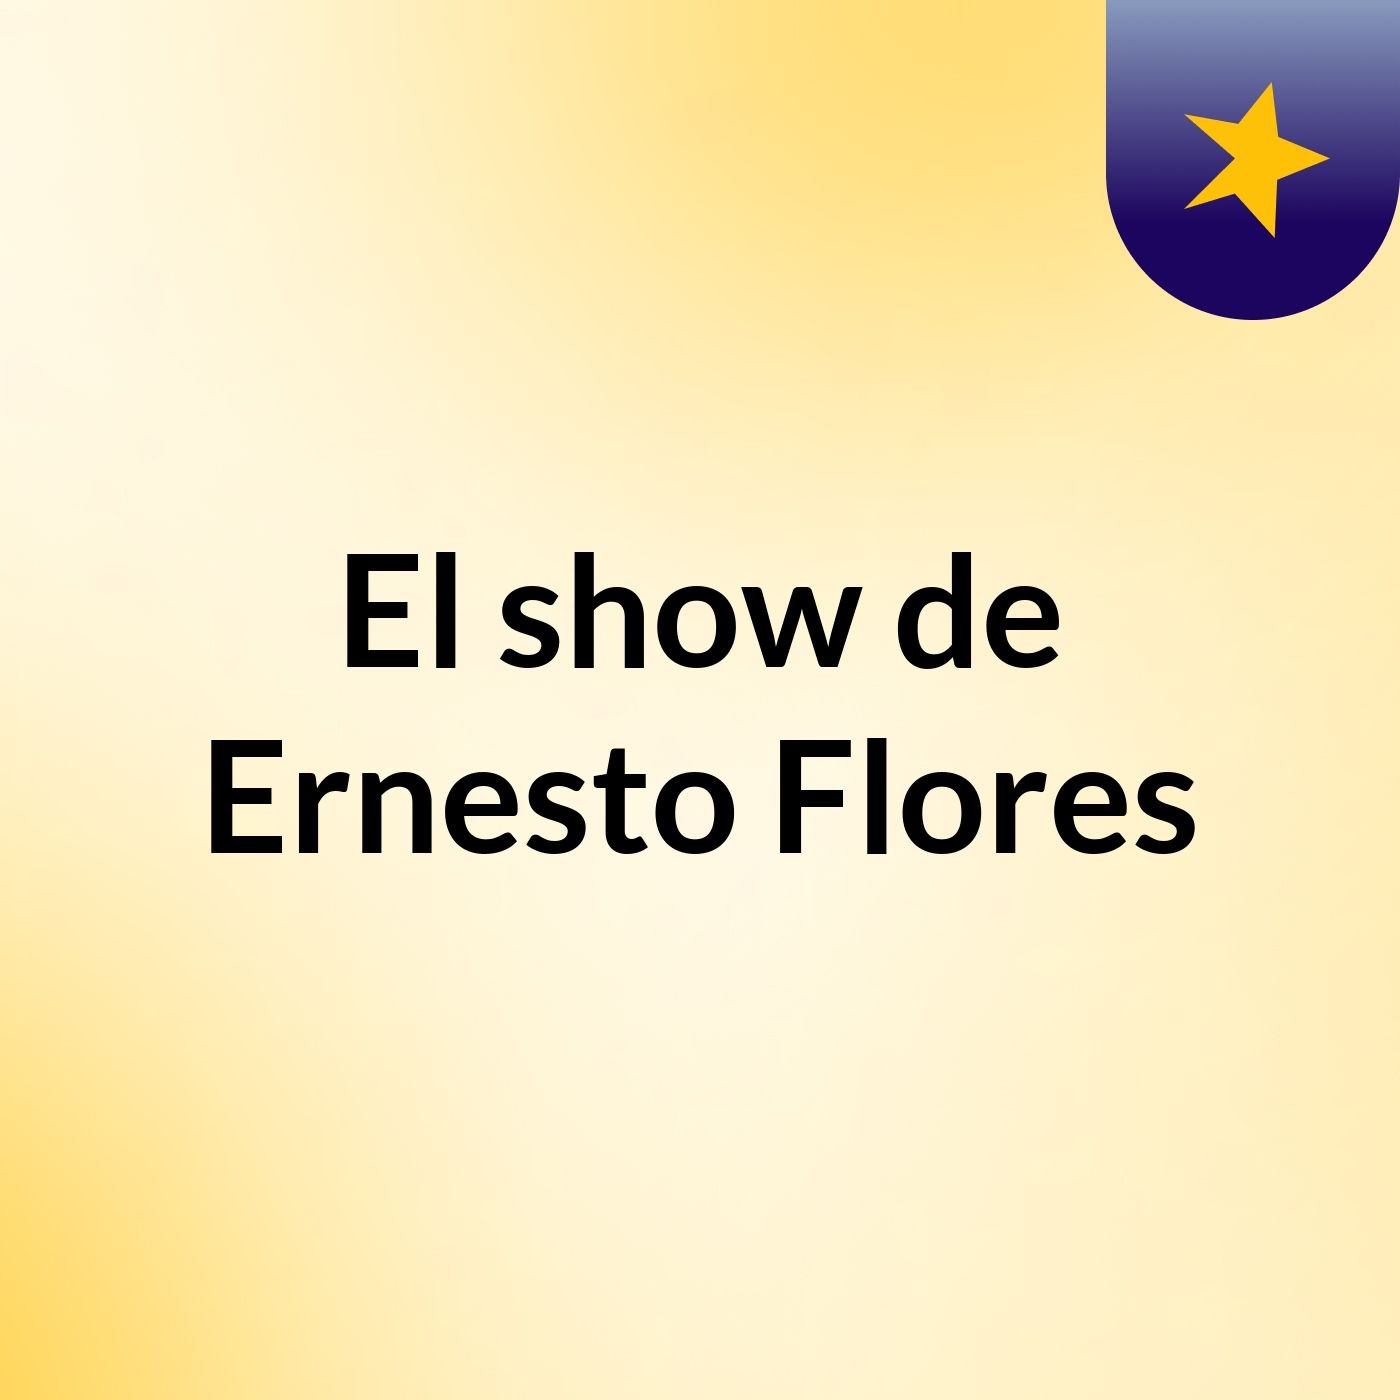 El show de Ernesto Flores